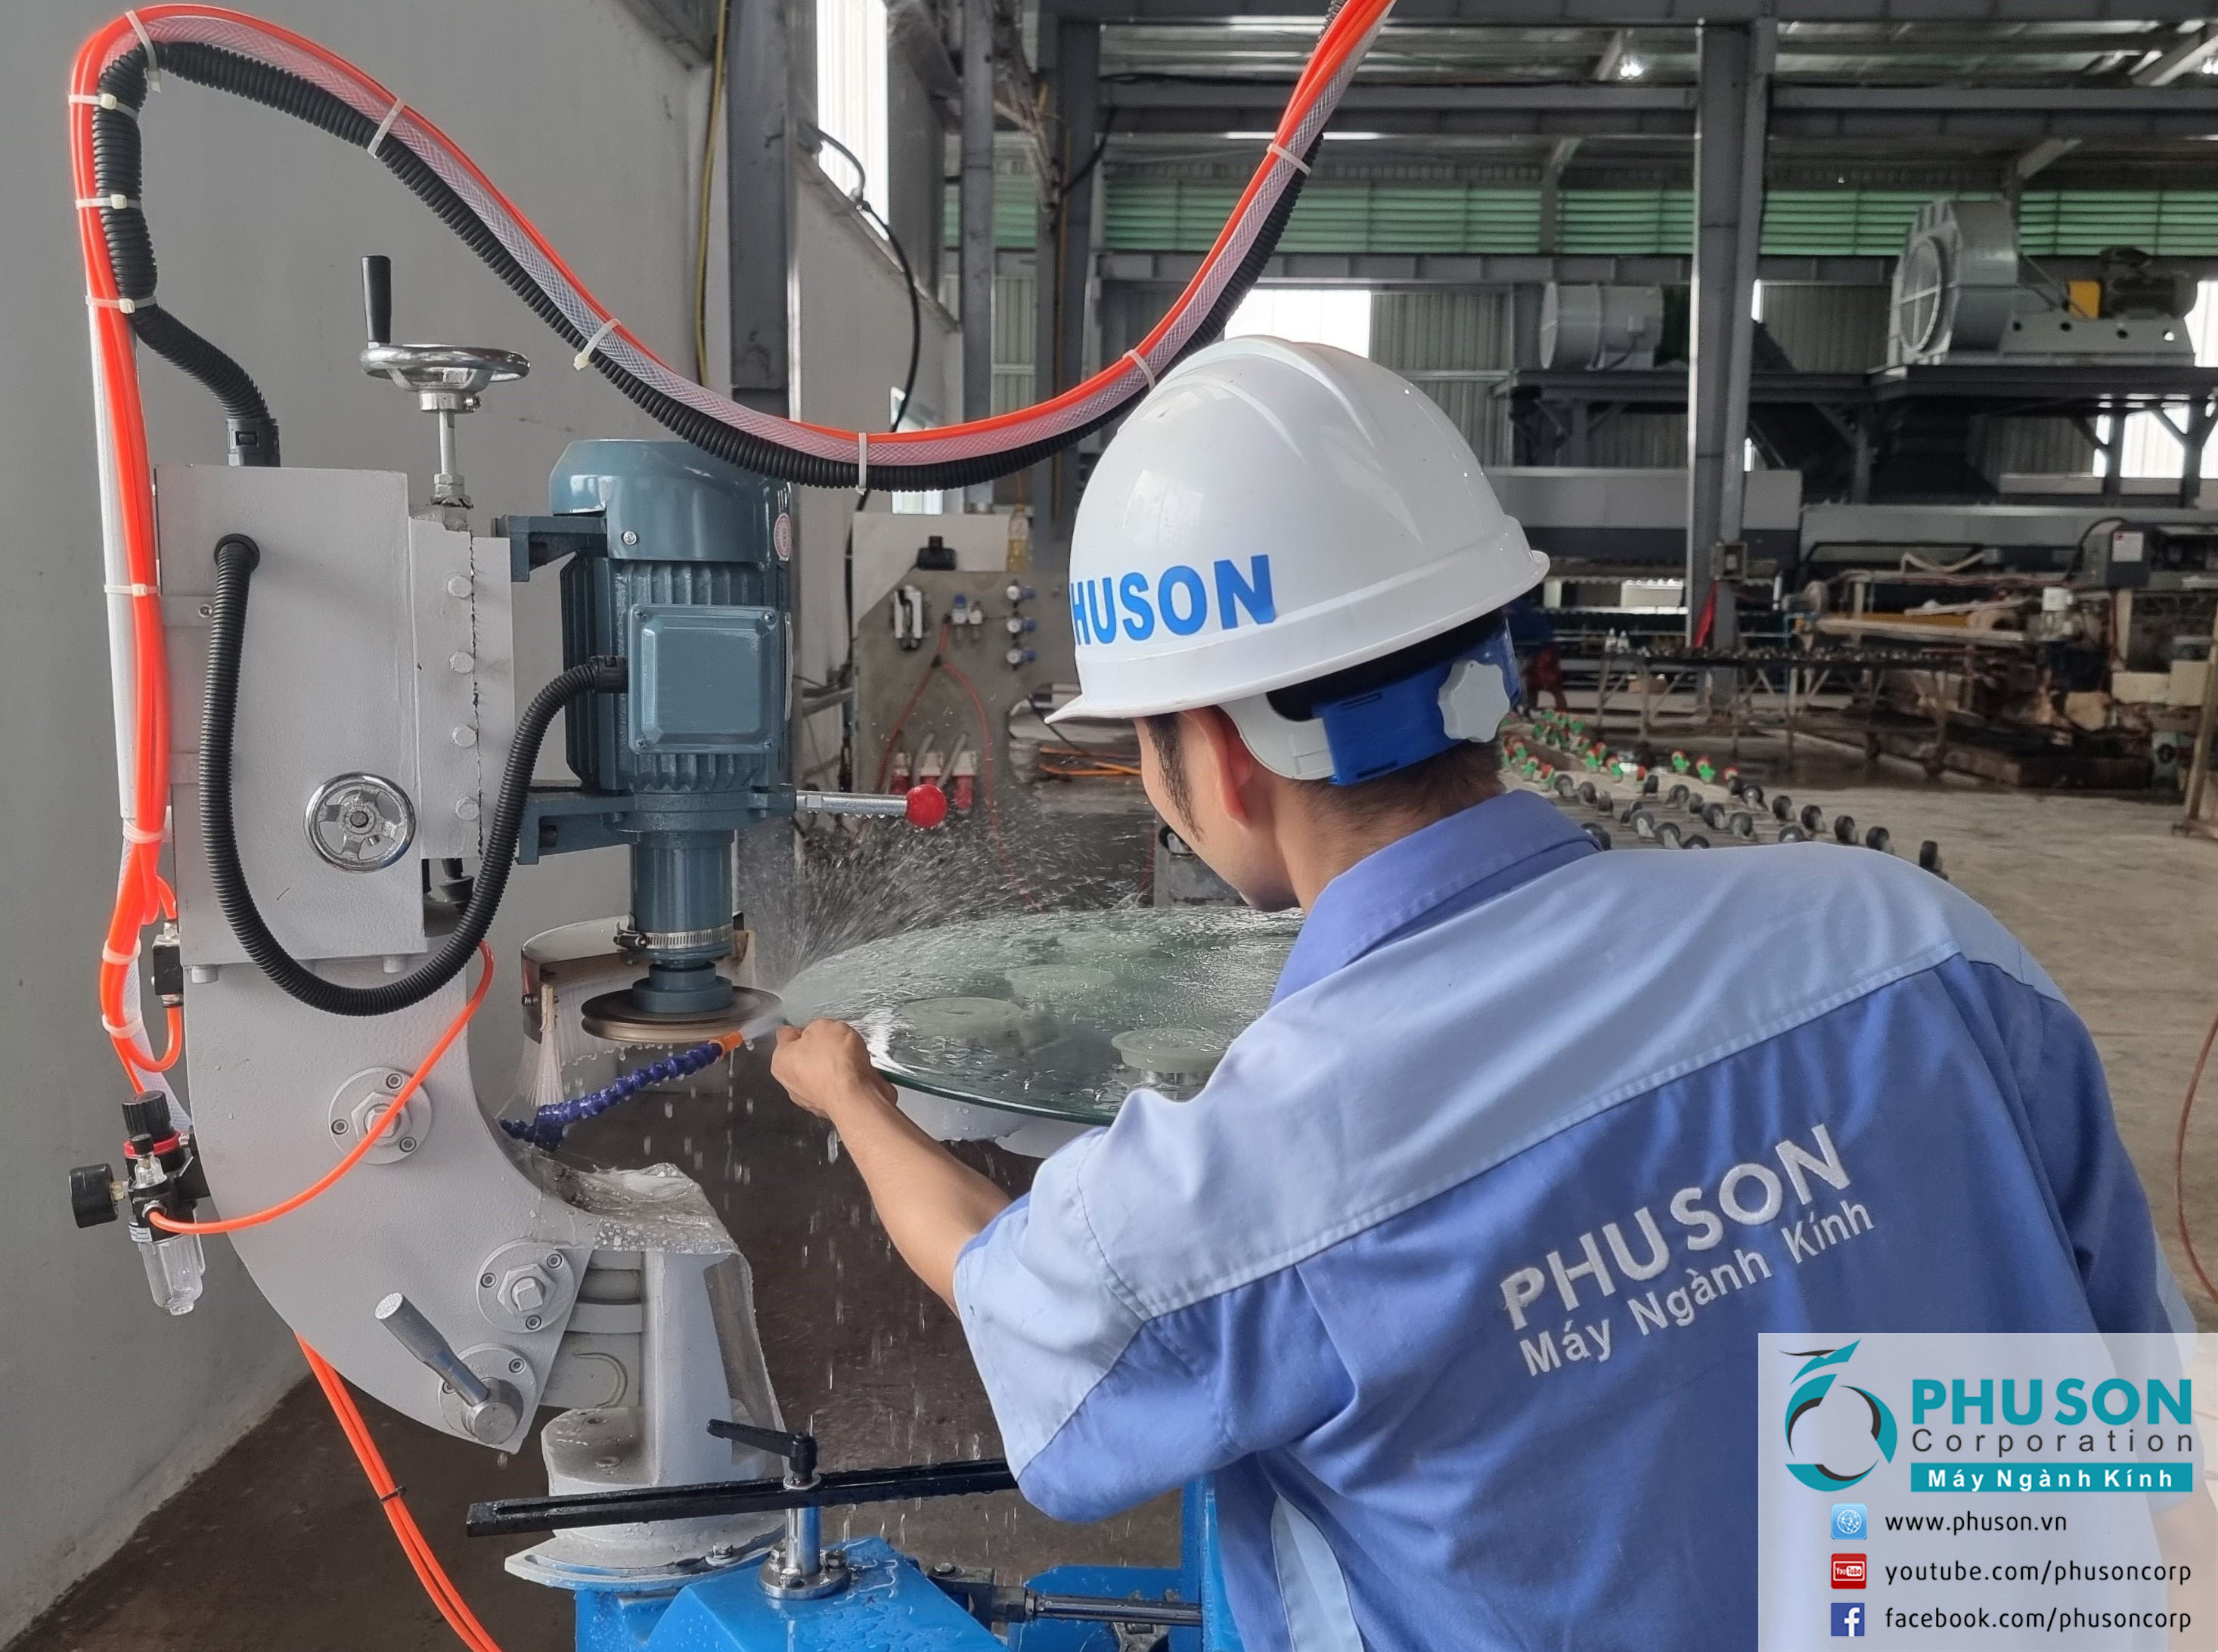 PHU SON Corporation hoàn thành lắp đặt máy mài kính đa hình (máy trục khửu) BOVONI tại nhà máy SOMVANG GLASS